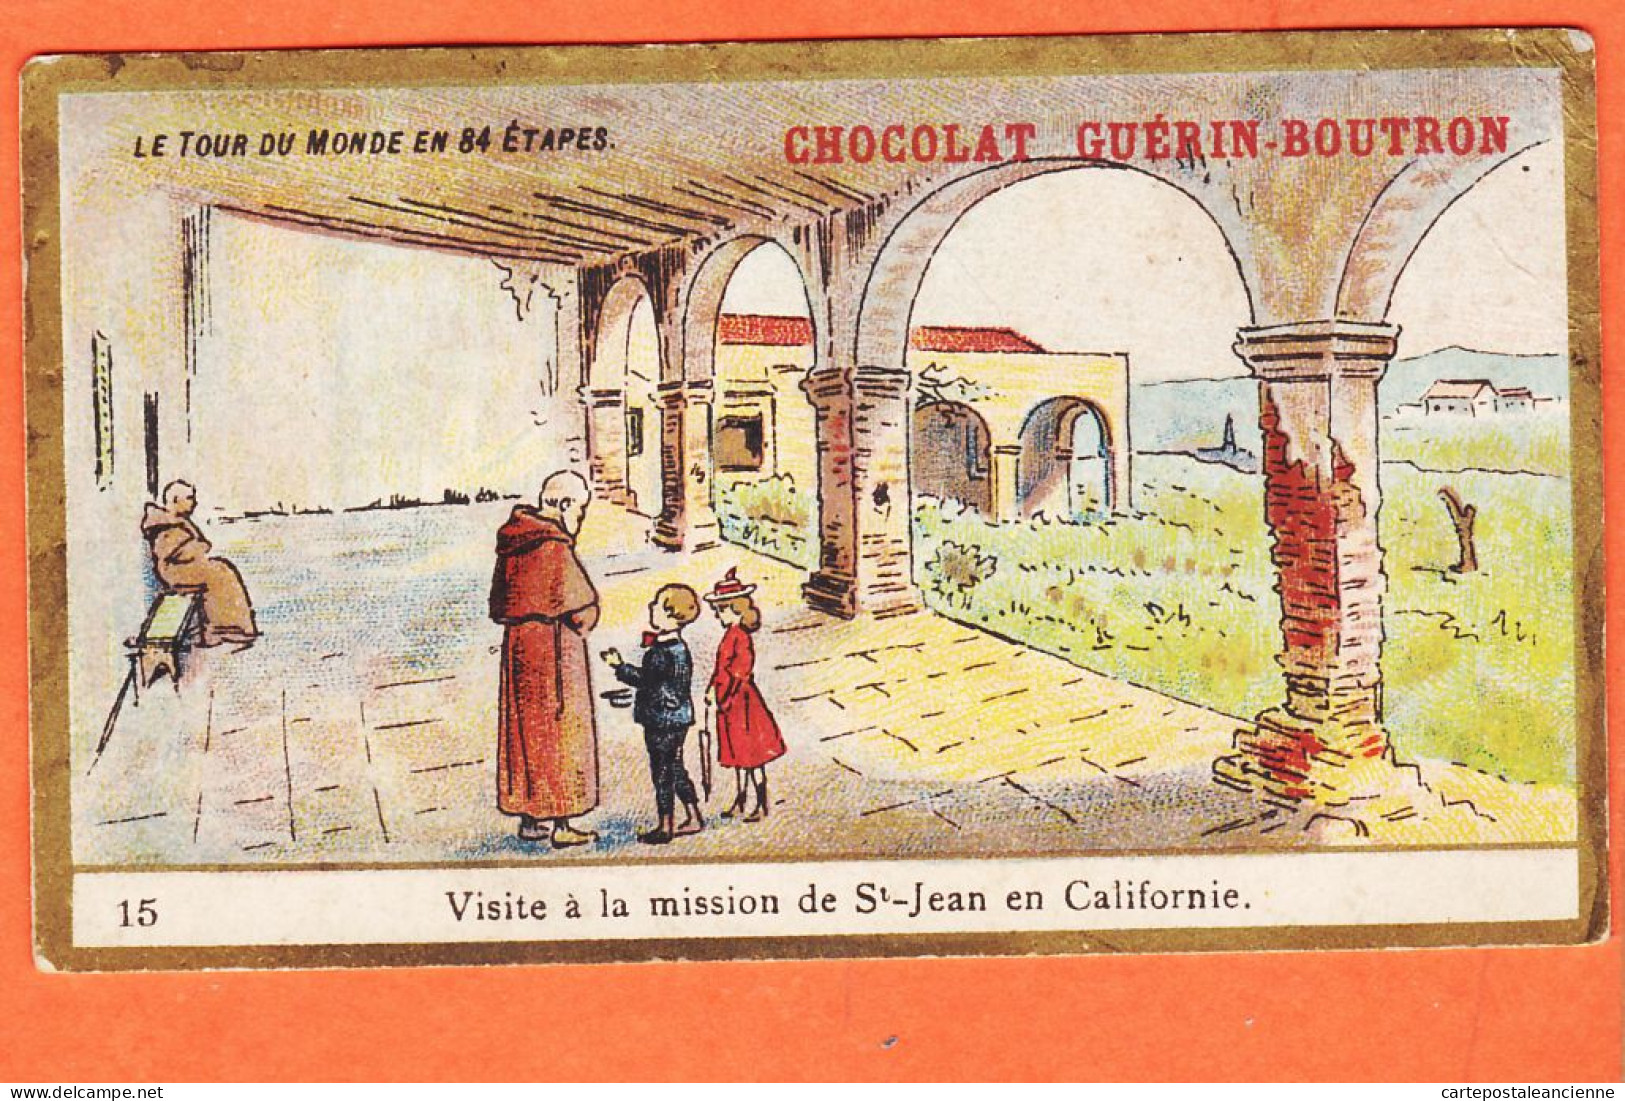 24831 /⭐ Chromo Chocolat GUERIN-BOUTRON 15 ◉ Tour Monde 84 étapes CALIFORNIE Visite Mission SAINT-JEAN ◉ PARIS Rue MAROC - Guérin-Boutron